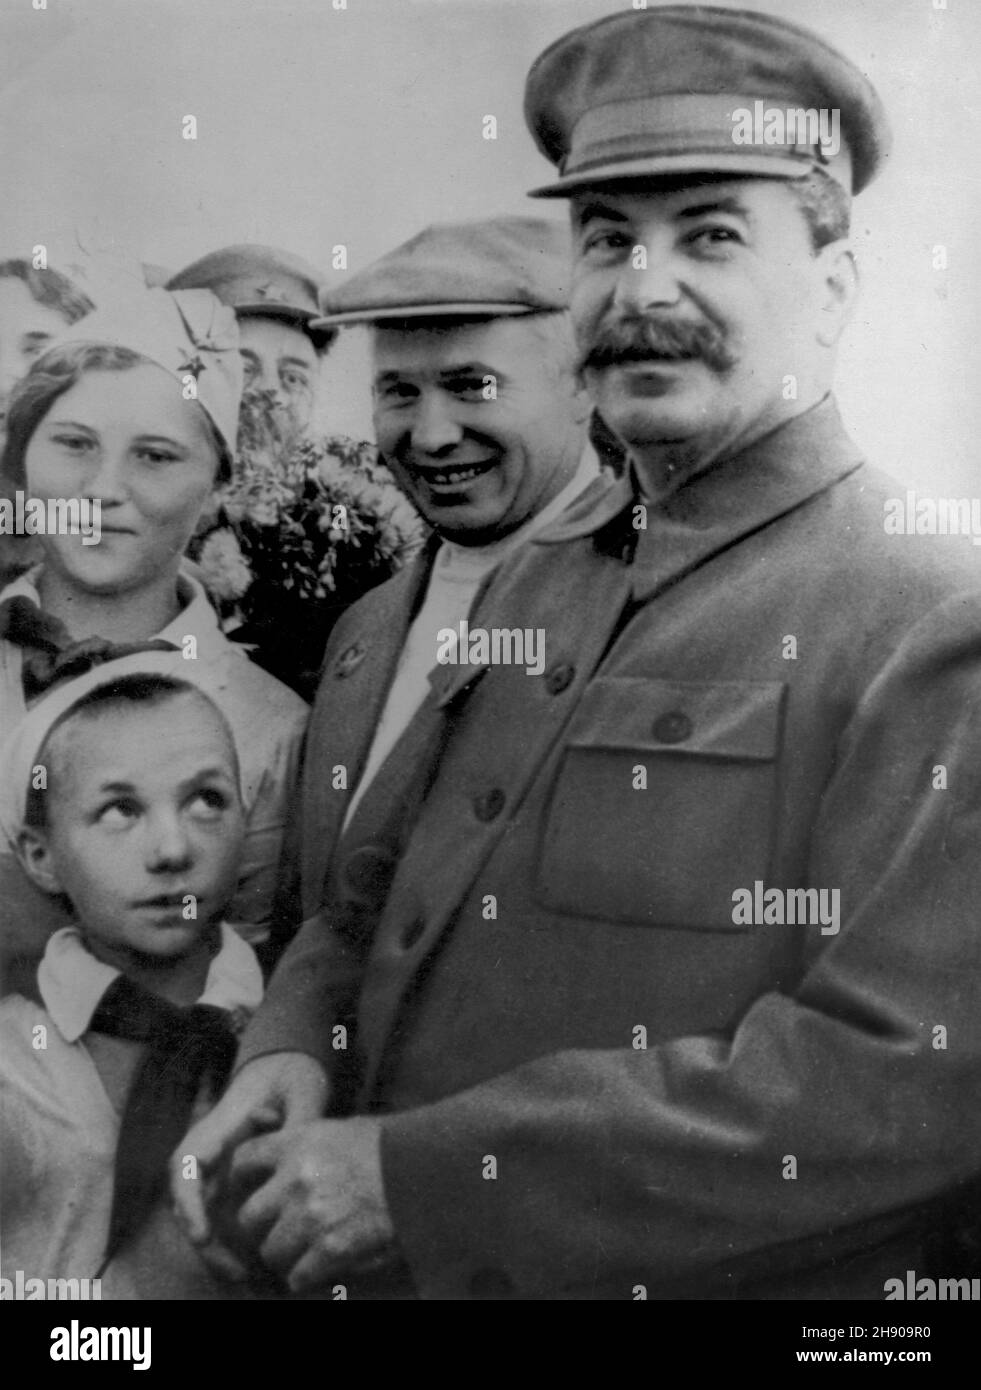 RUSSIE - vers 1938 - Nikita Kruchtchev et Joseph Staline sur une promenade quelque part dans l'ex-URSS vers 1938 - photo: Geopix Banque D'Images